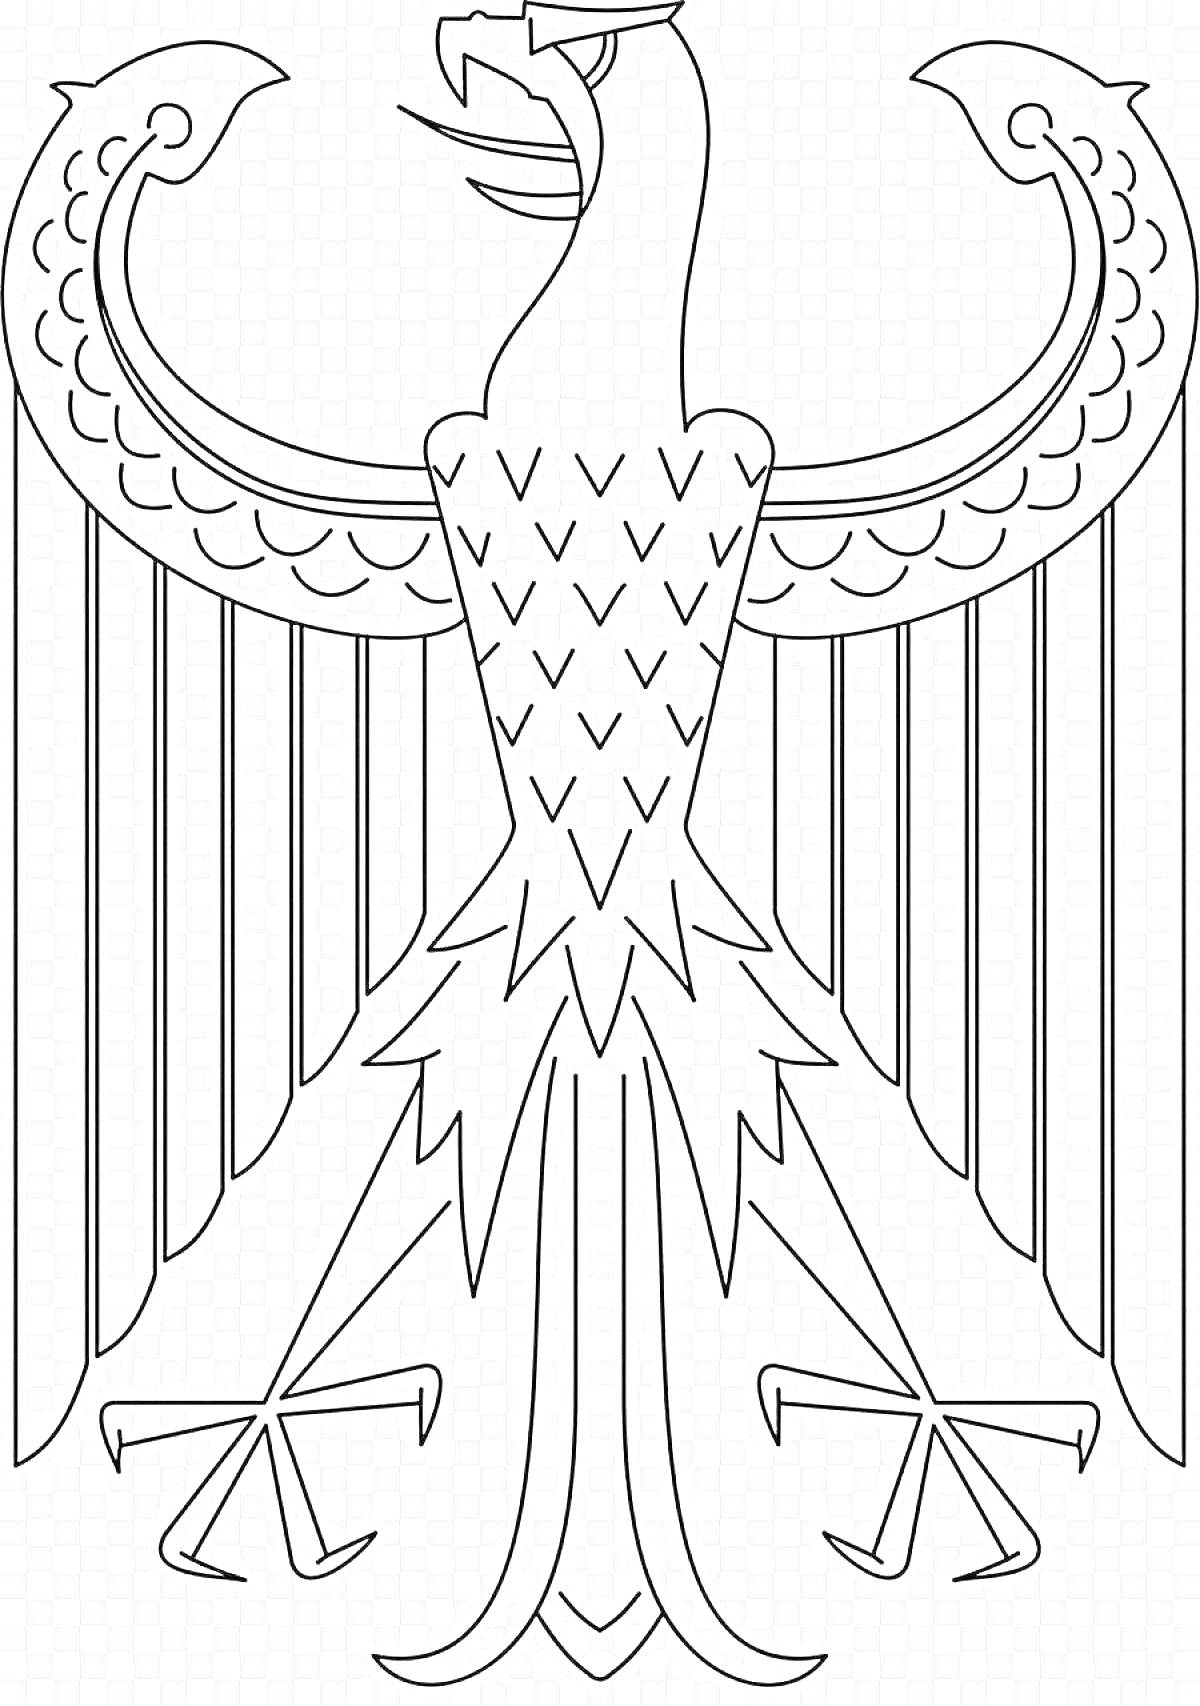 Раскраска Герб Германии - черно-белая раскраска с изображением орла с расправленными крыльями, когтями и хвостом